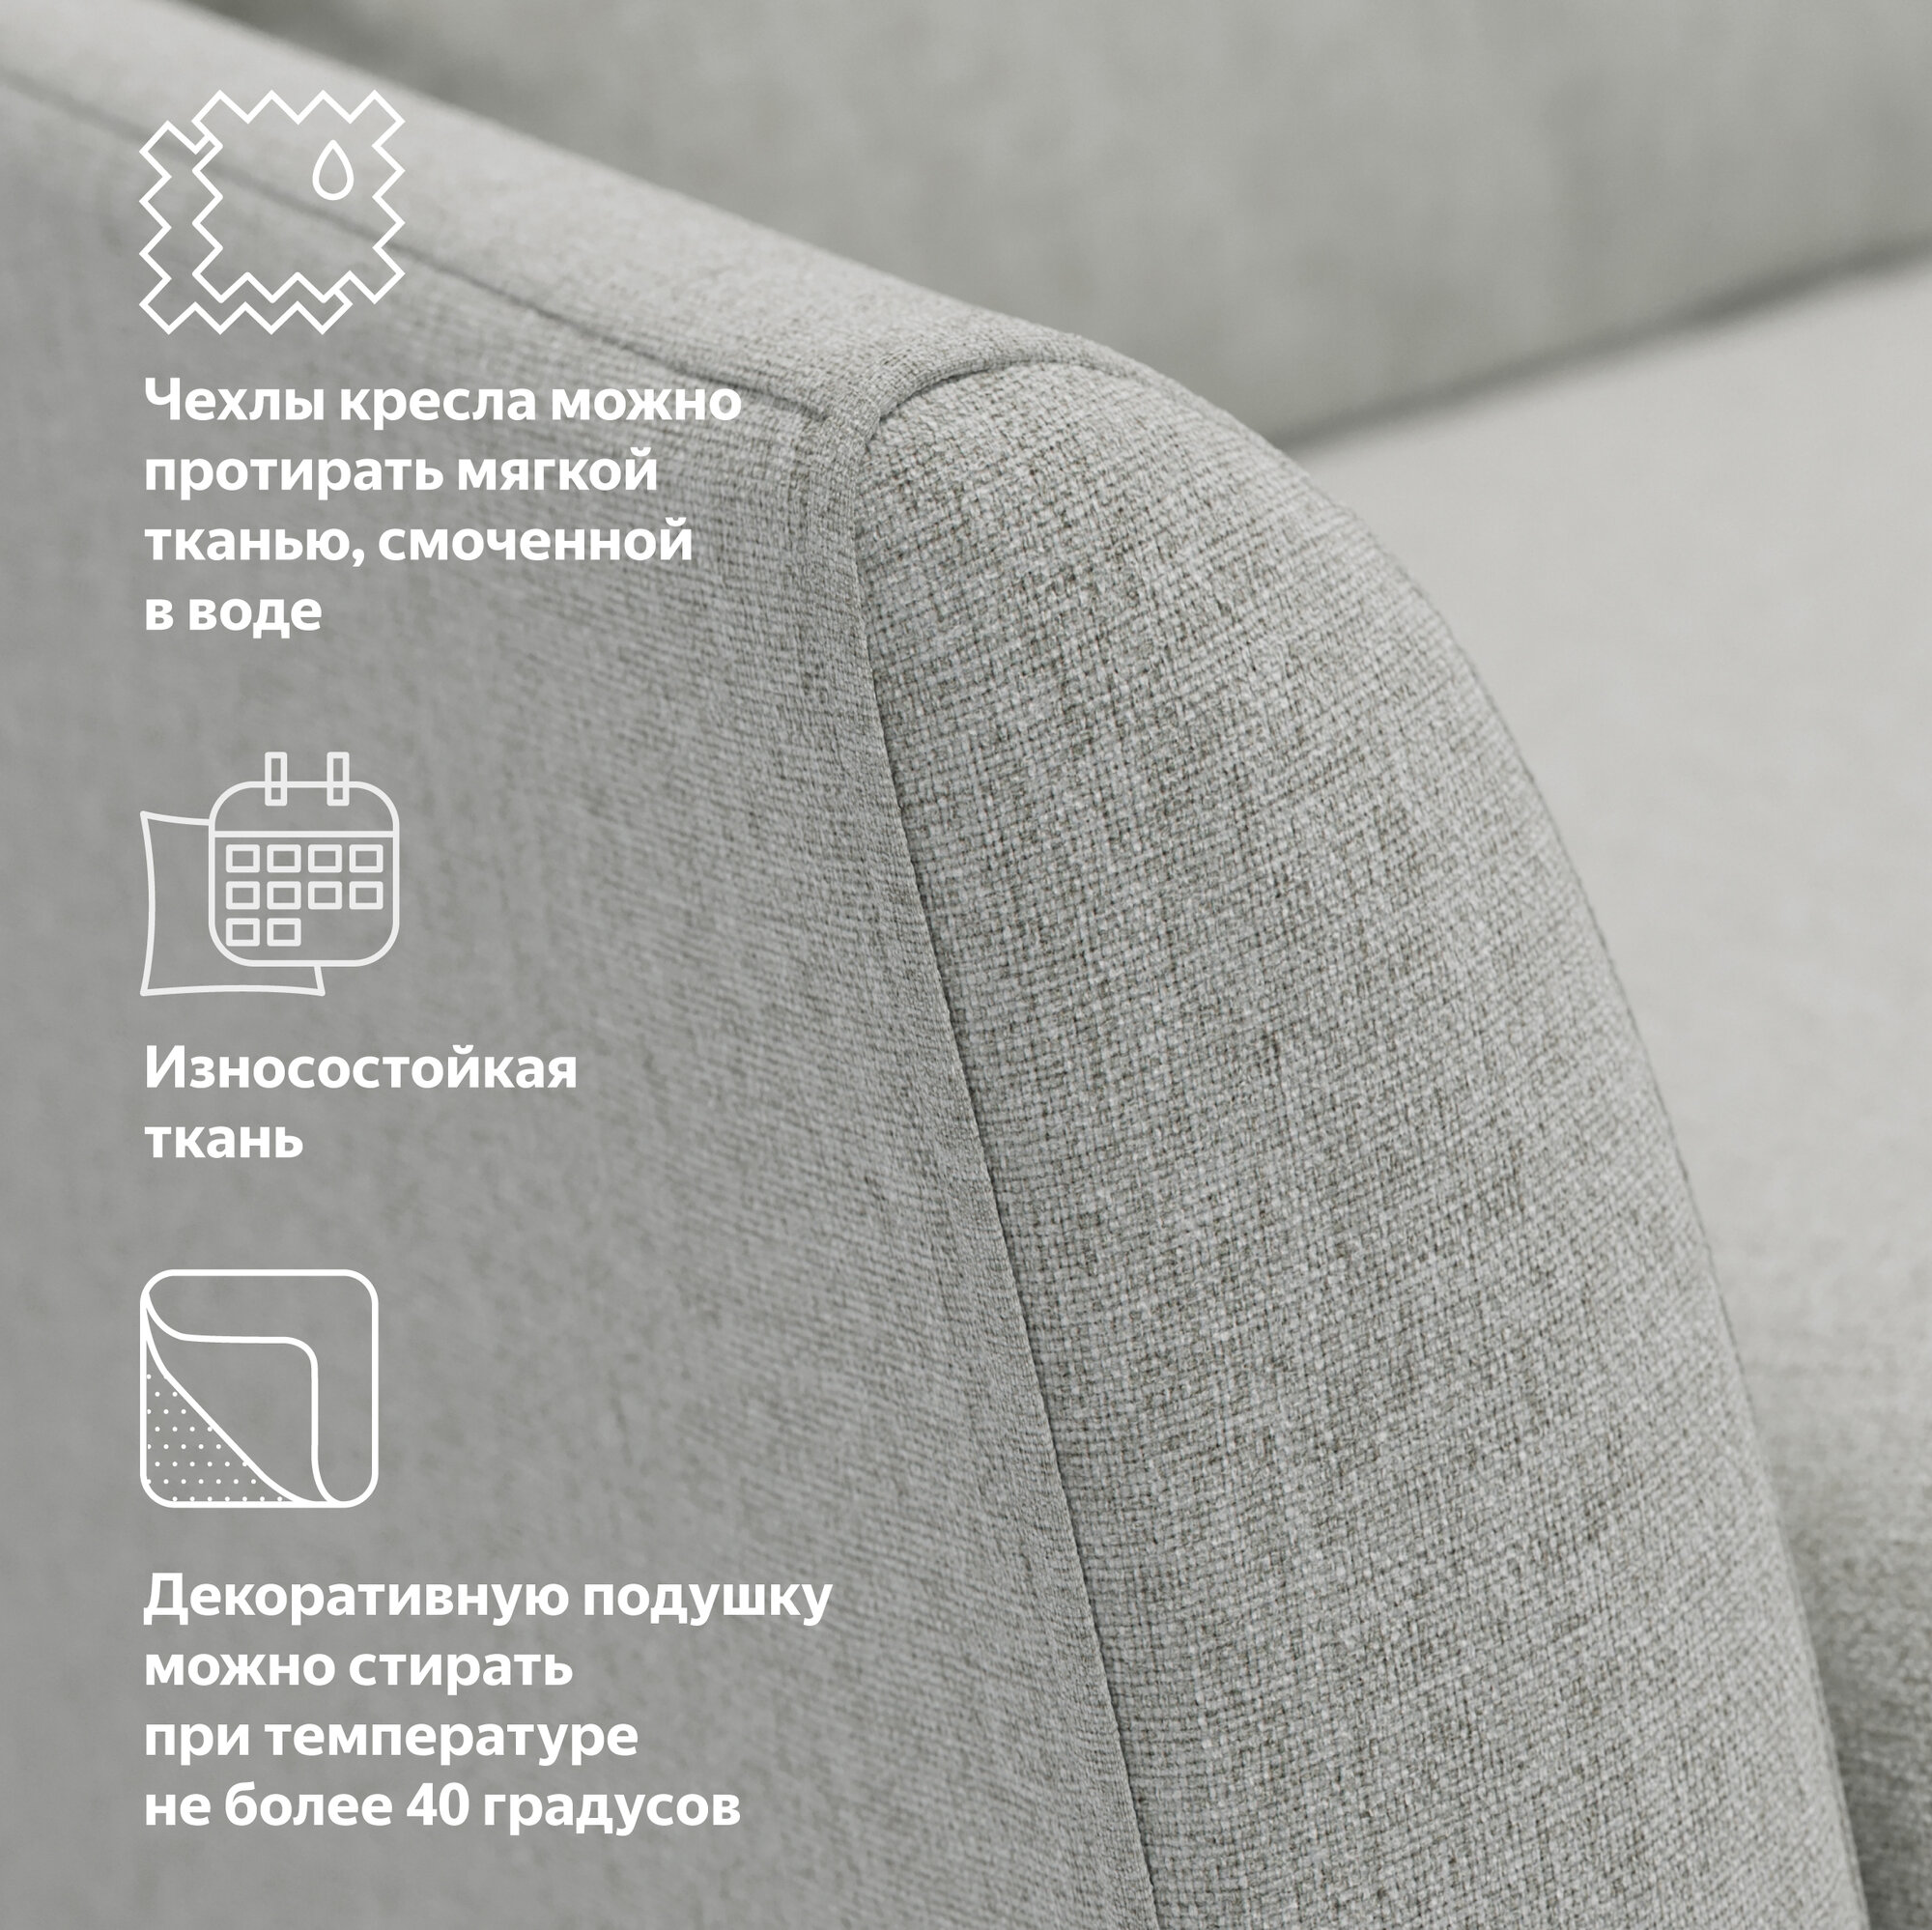 Кресло с декоративной подушкой Pragma Elton, обивка: текстиль, светло-серый